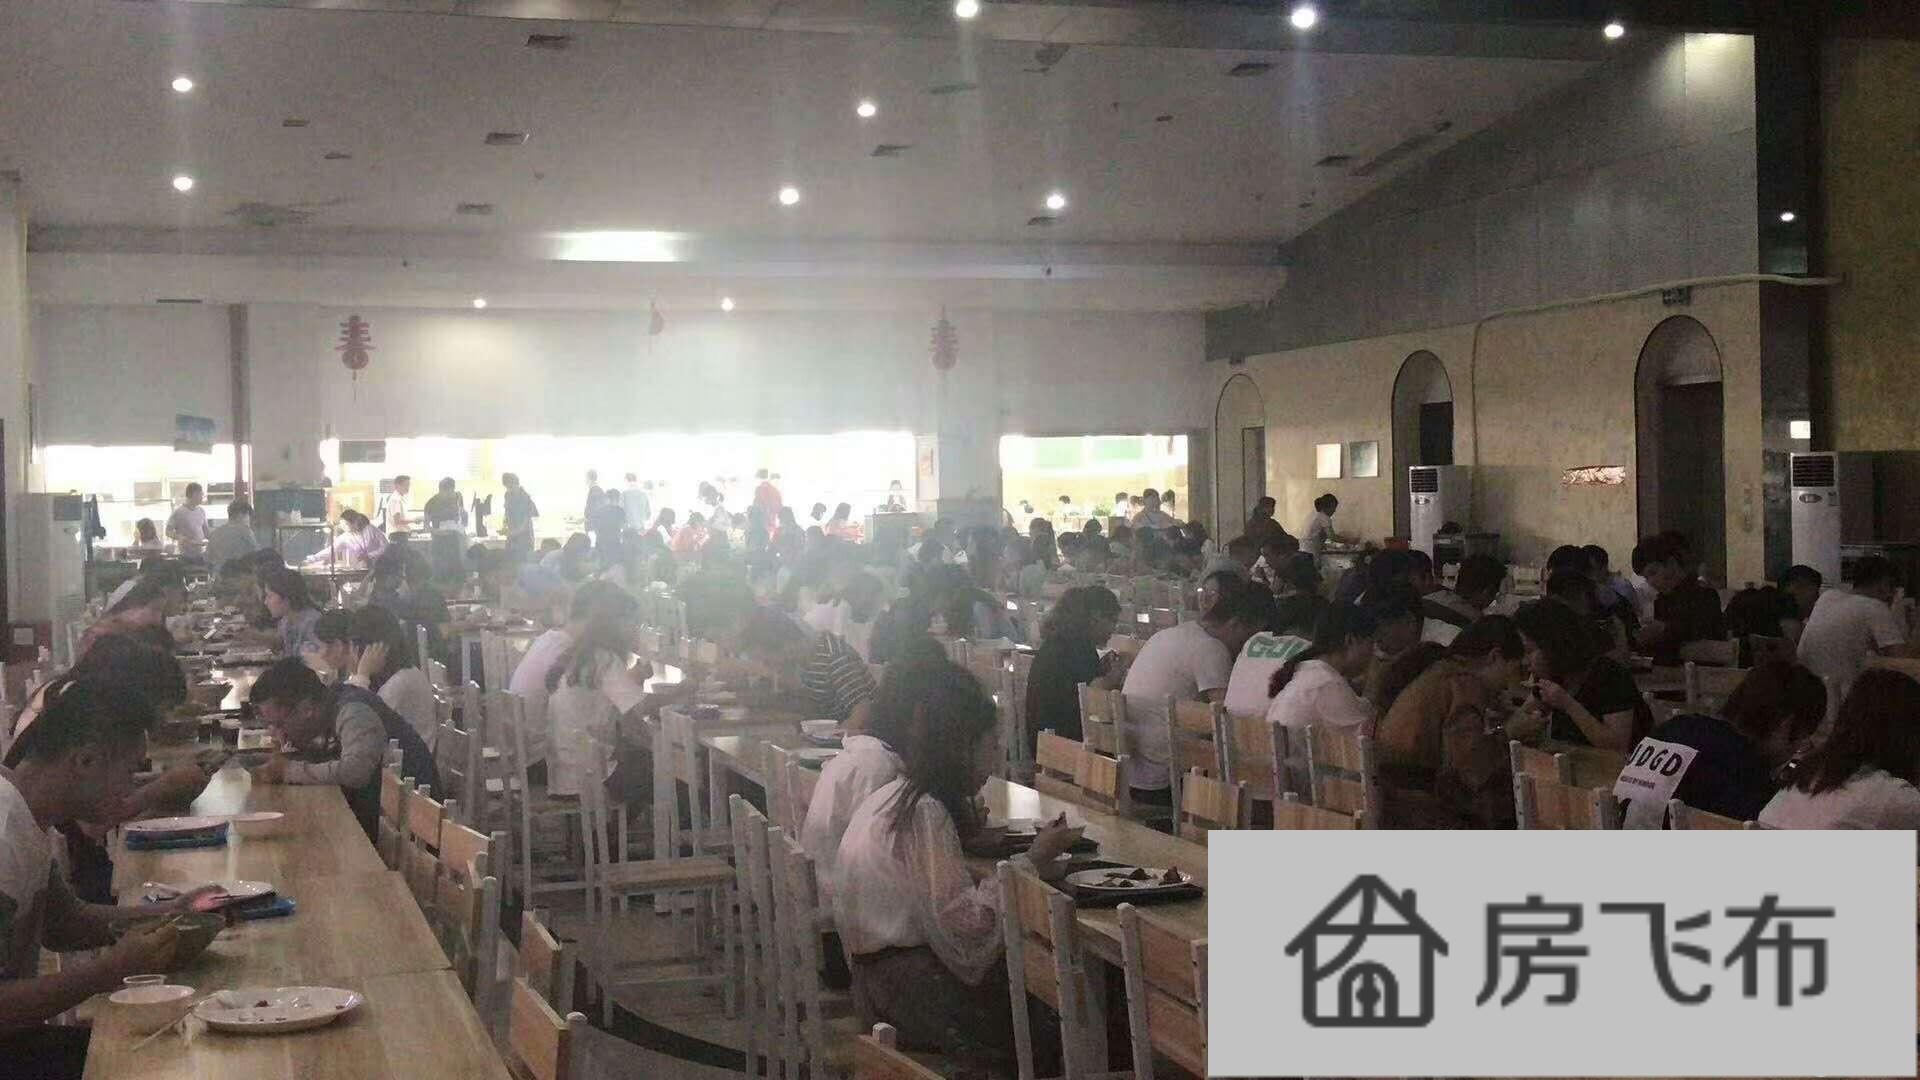 (出租) 坂田园区招租啦拥有八千人的大食堂500个公共座位